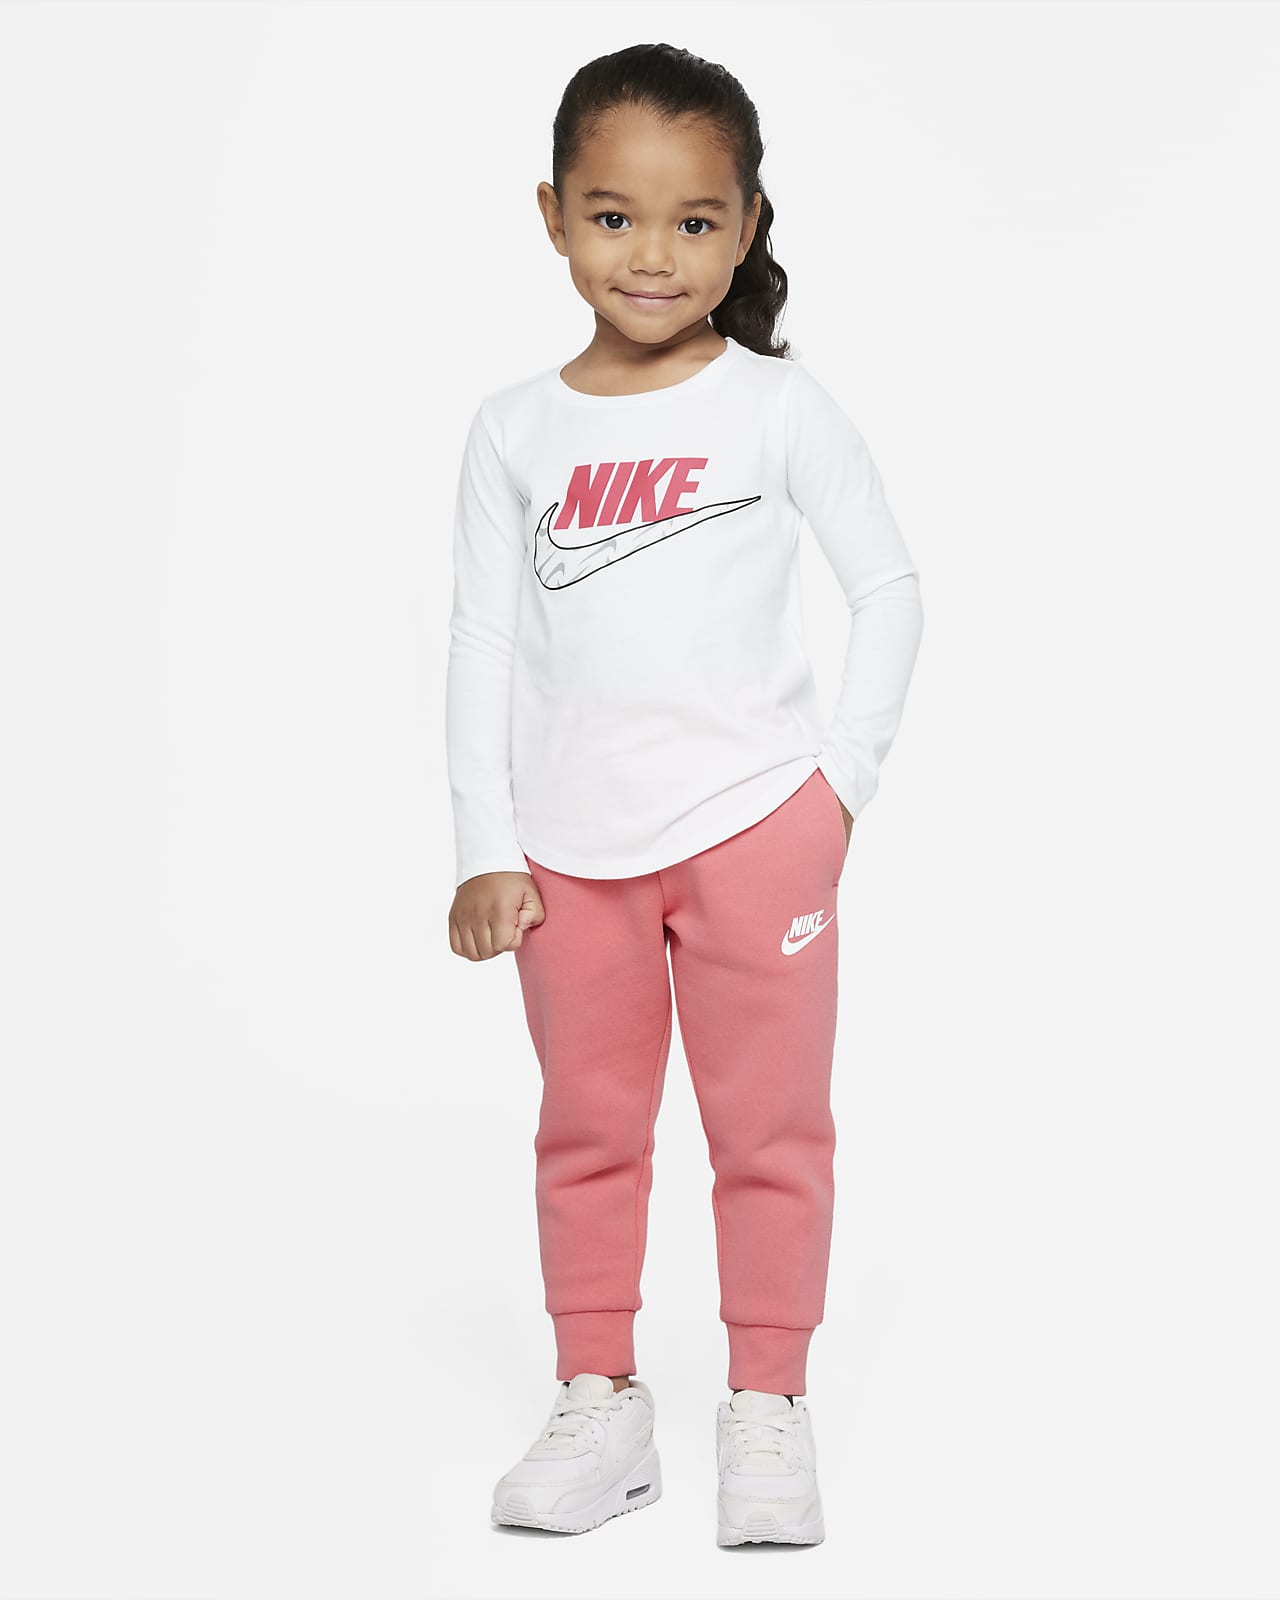 Club Toddler Pants. Sportswear Nike Fleece